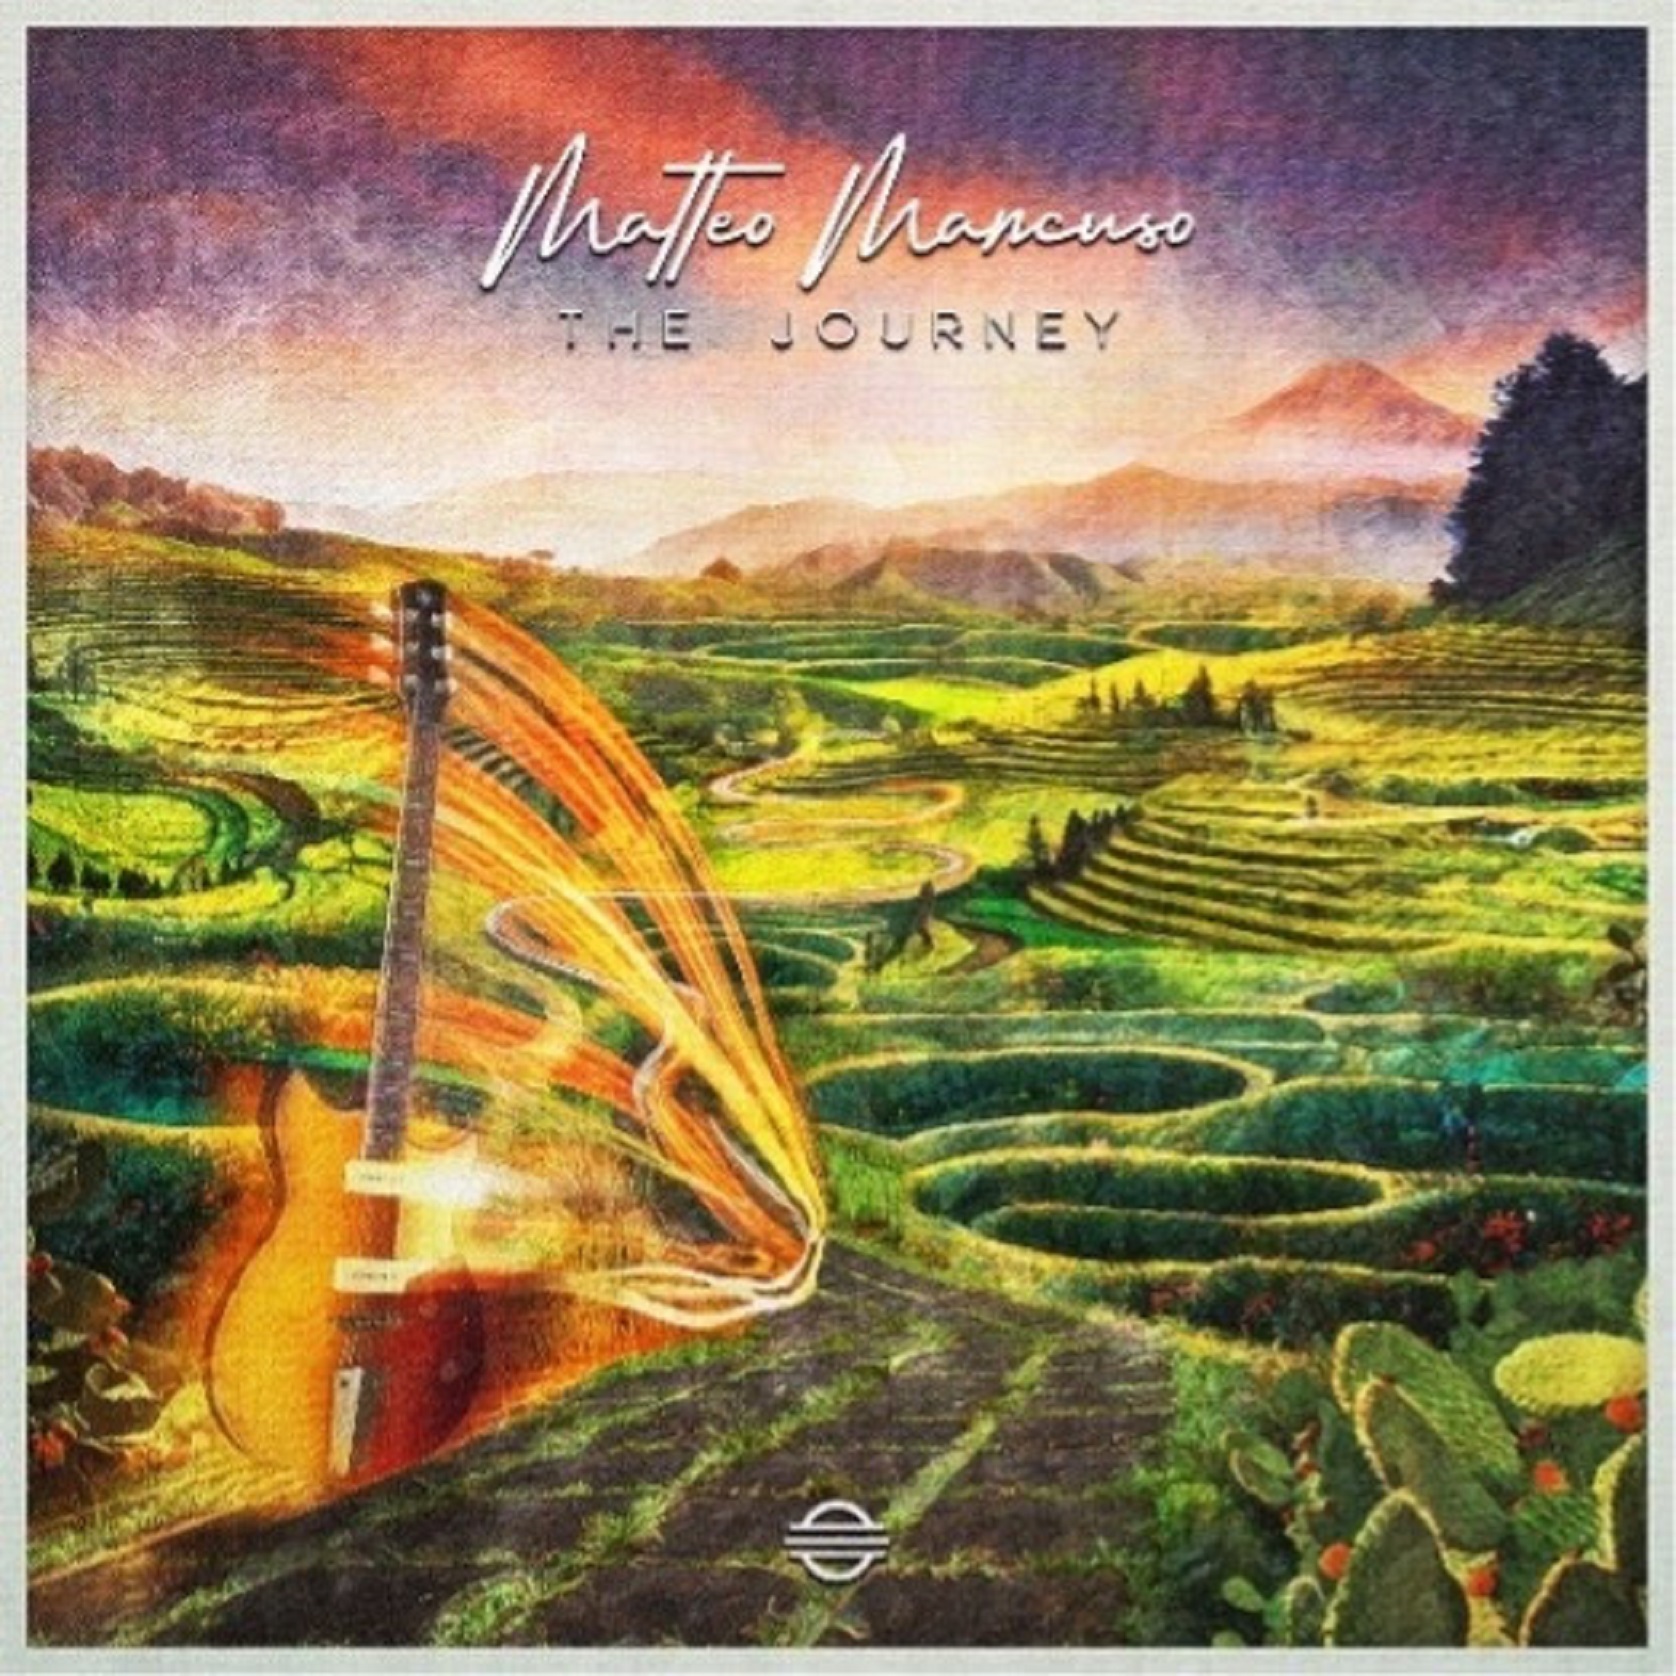 Guitar virtuoso Matteo Mancuso announces his debut album, 'The Journey'